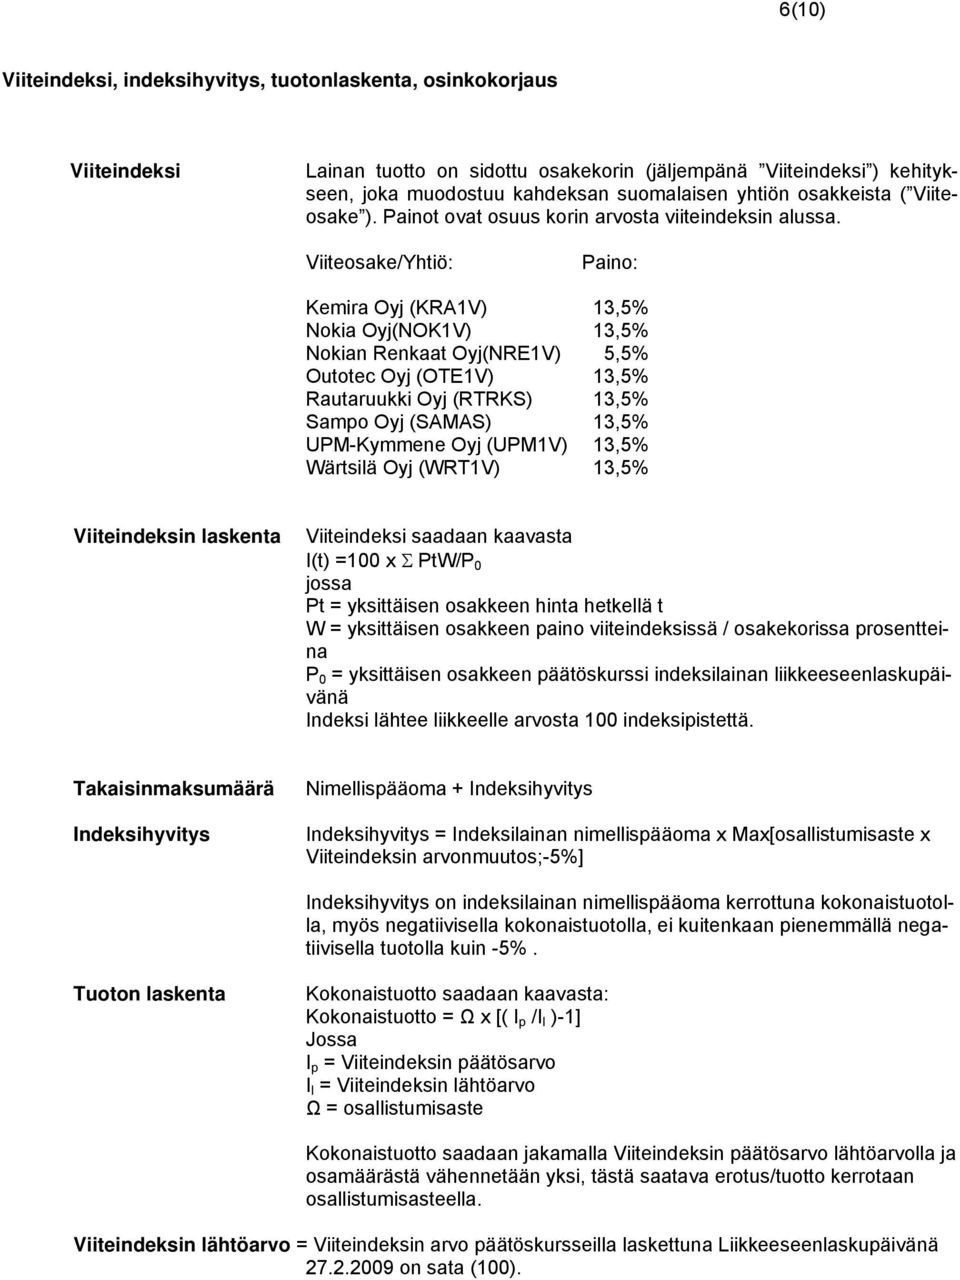 Viiteosake/Yhtiö: Paino: Kemira Oyj (KRA1V) 13,5% Nokia Oyj(NOK1V) 13,5% Nokian Renkaat Oyj(NRE1V) 5,5% Outotec Oyj (OTE1V) 13,5% Rautaruukki Oyj (RTRKS) 13,5% Sampo Oyj (SAMAS) 13,5% UPM-Kymmene Oyj